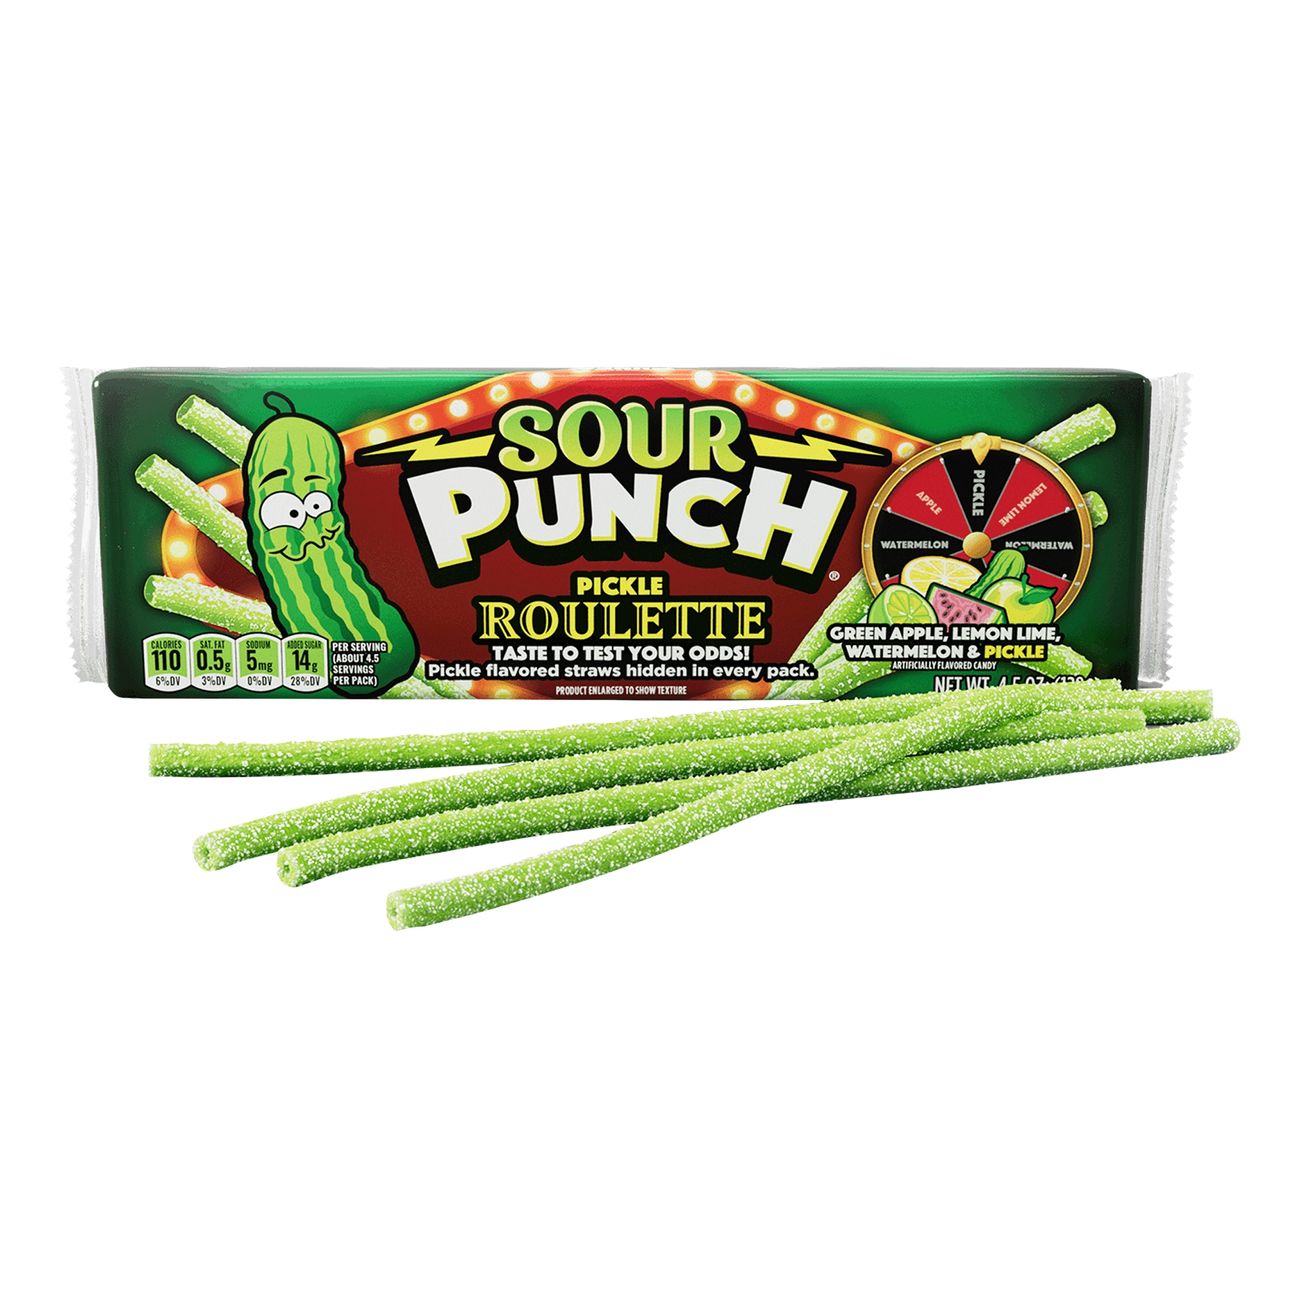 sour-punch-bites-pickle-roulette-100269-1